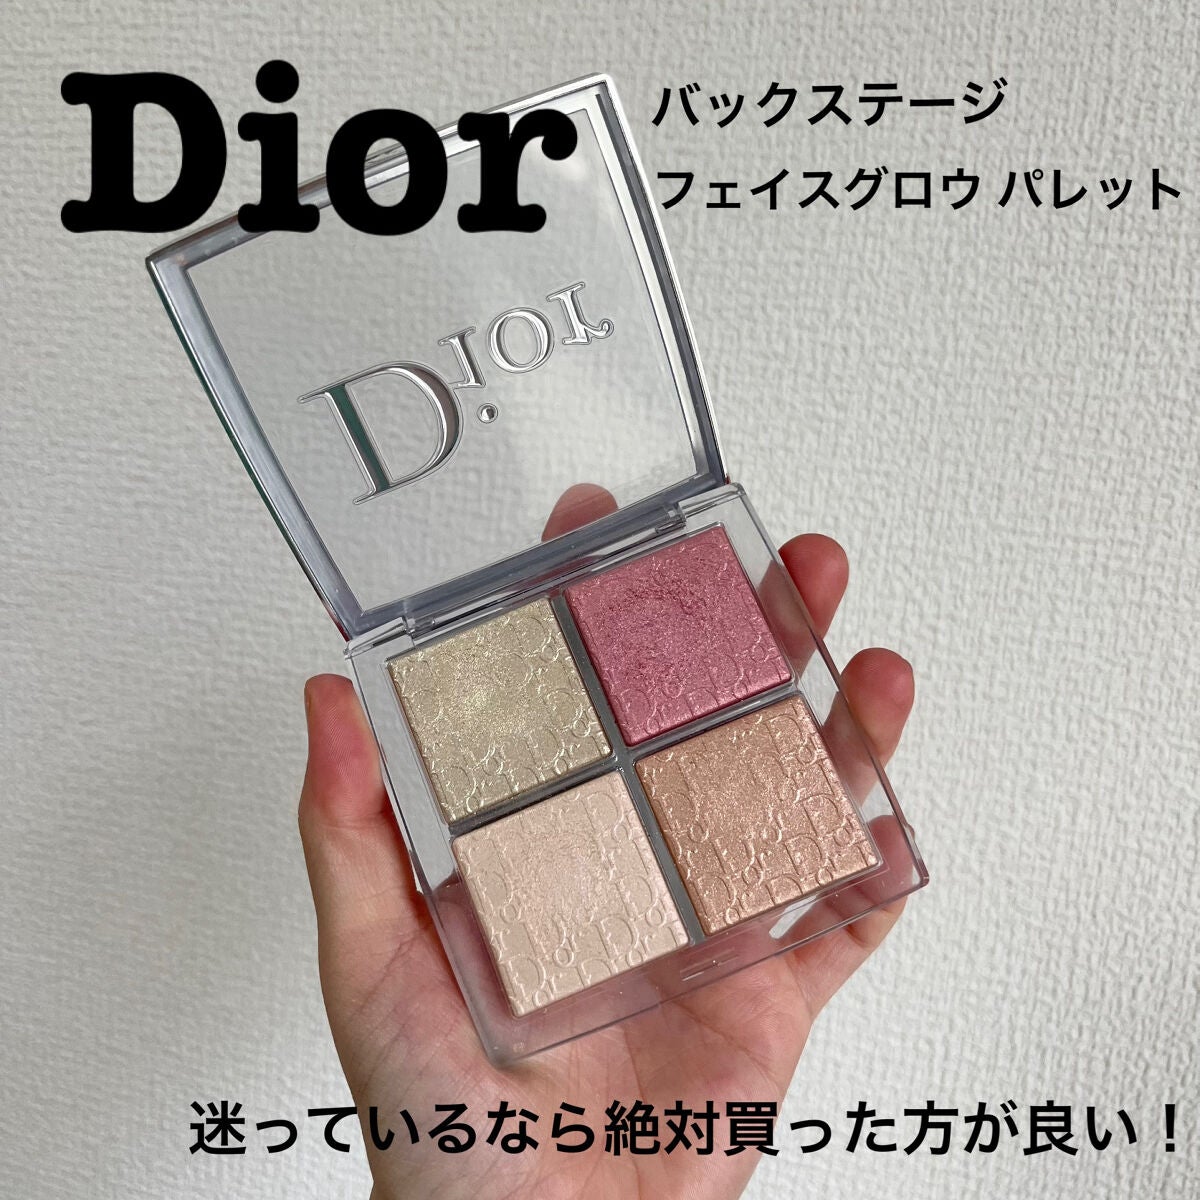 Dior 優秀 フェイスグロウパレット